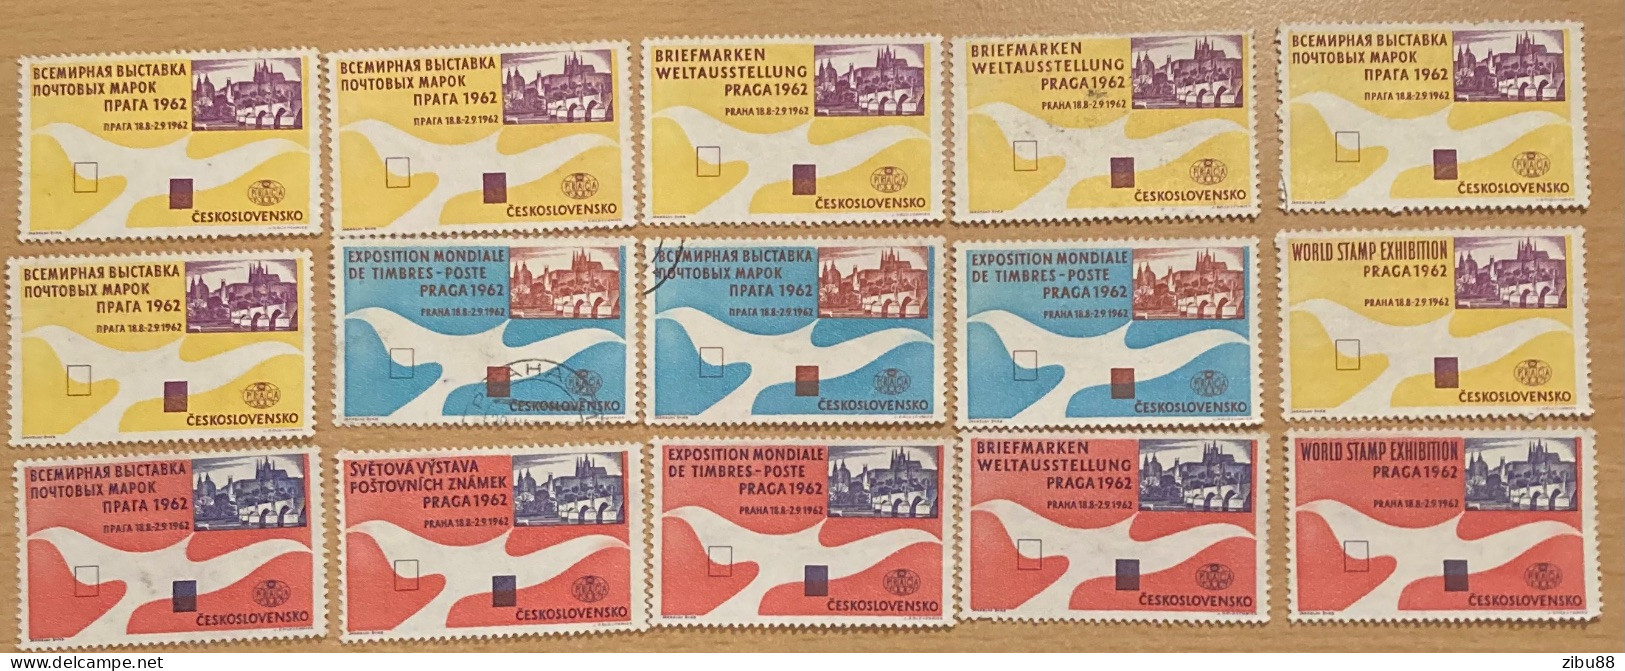 15 Stamps / Cinderella / Werbemarken Briefmarken Weltausstellung Prag 1962 World Stamp Exhibition - Lots & Serien